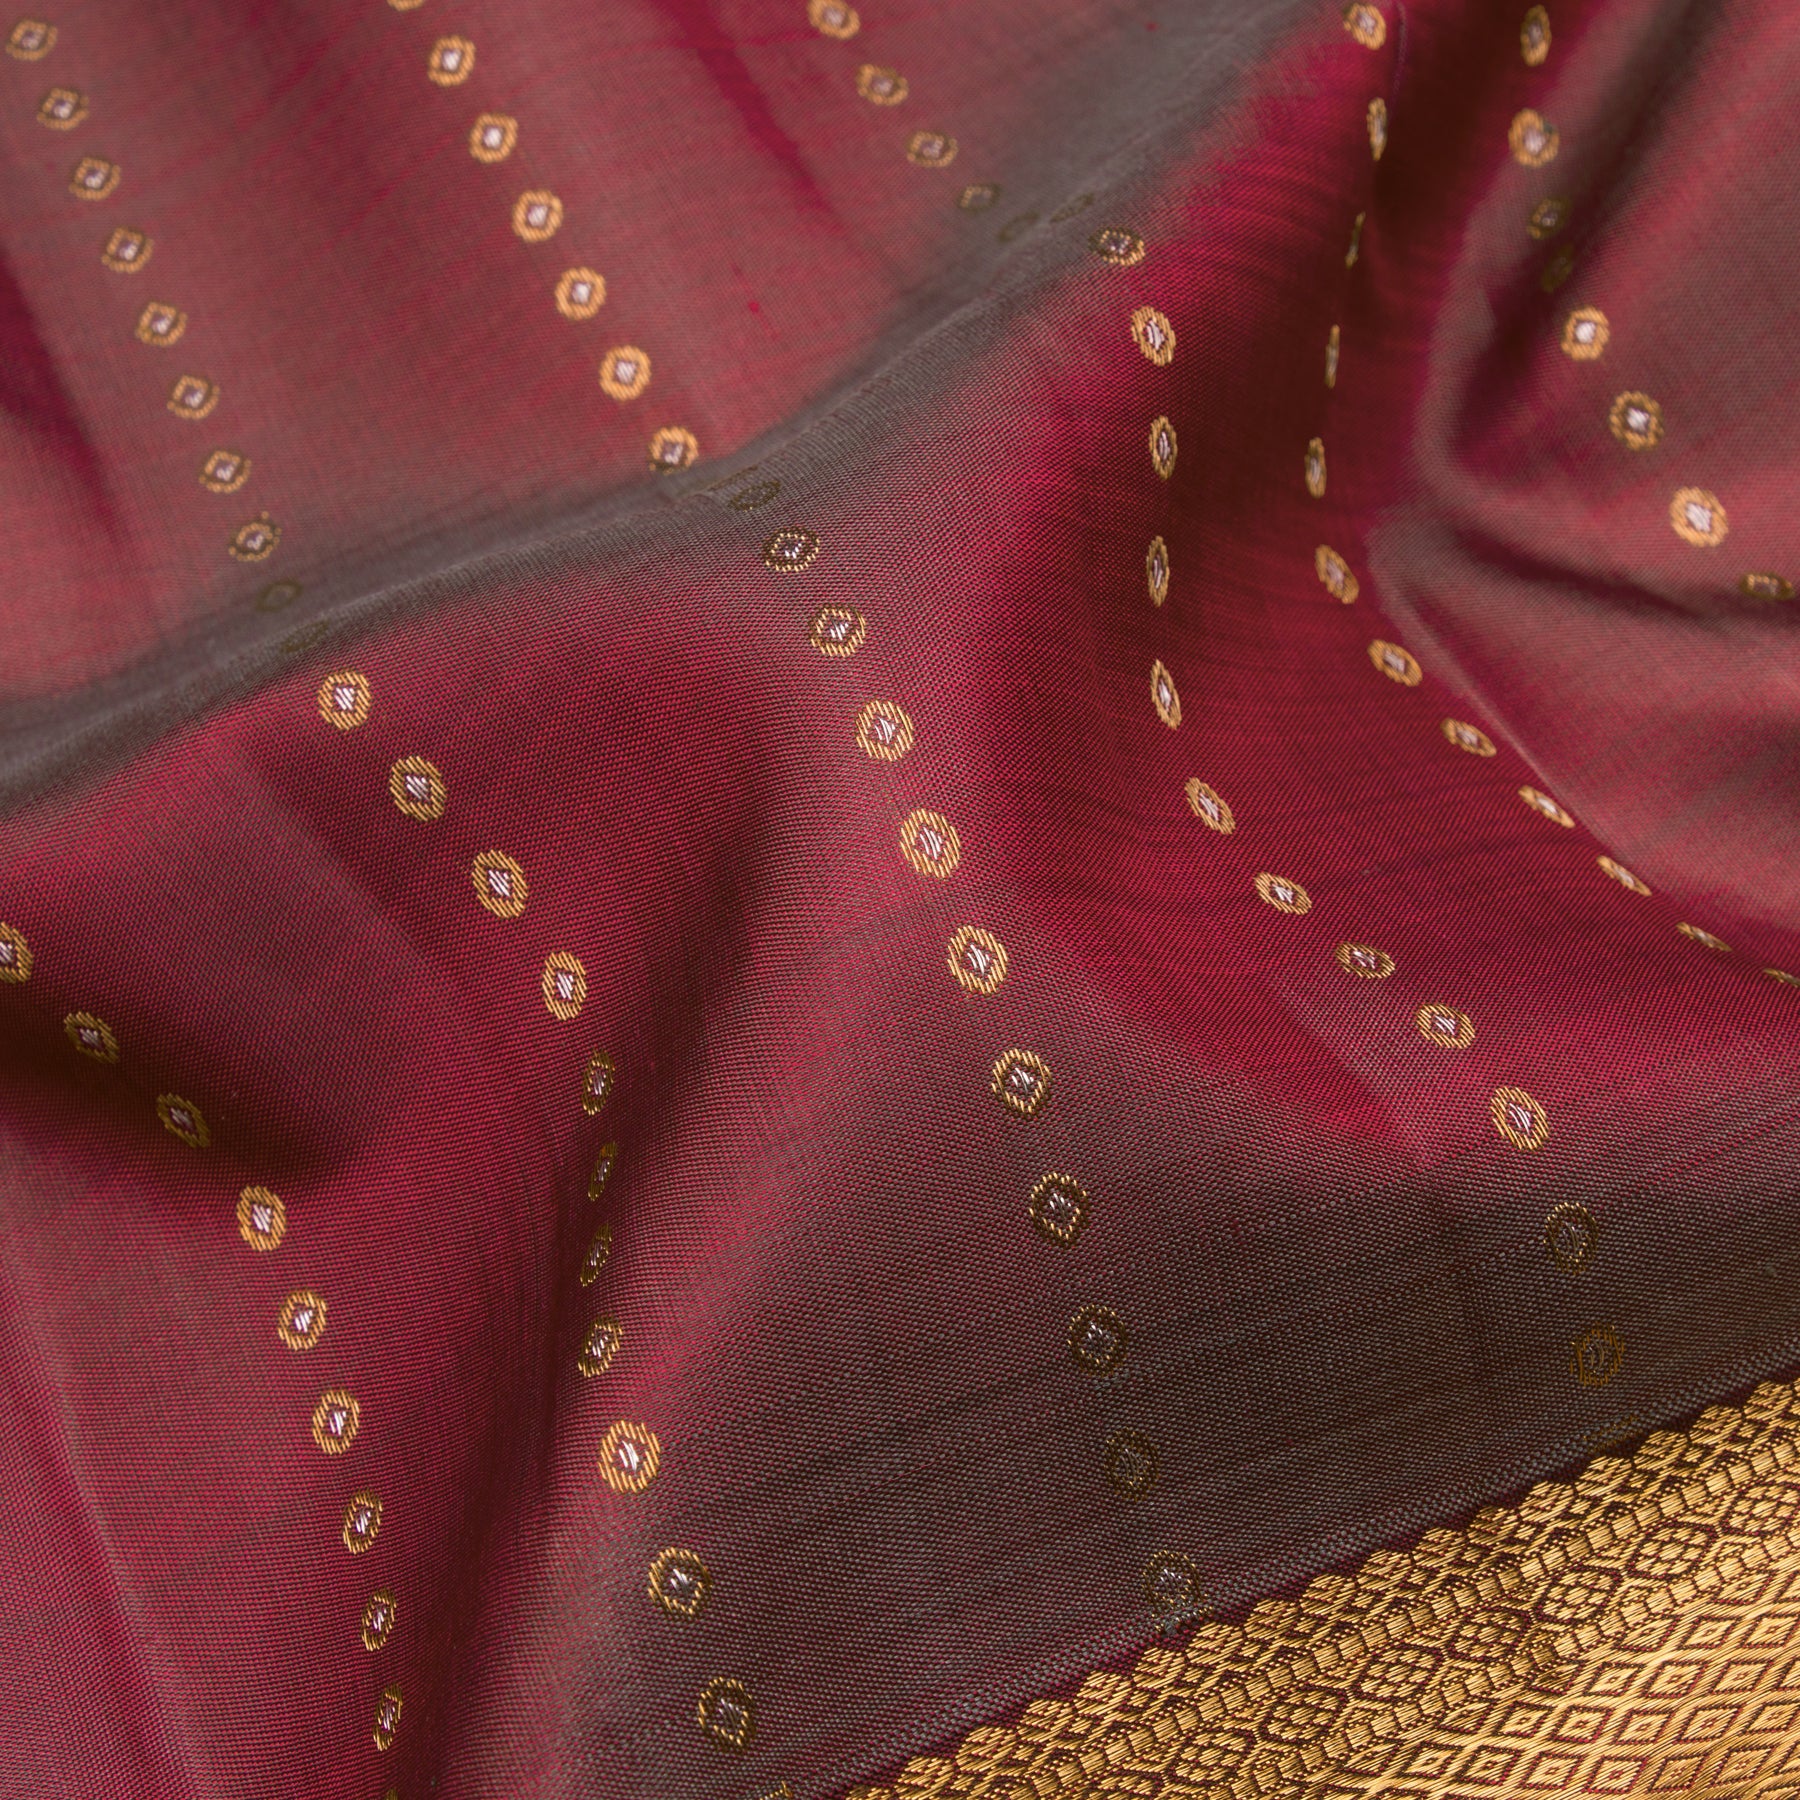 Kanakavalli Kanjivaram Silk Sari 23-611-HS001-04563 - Fabric View